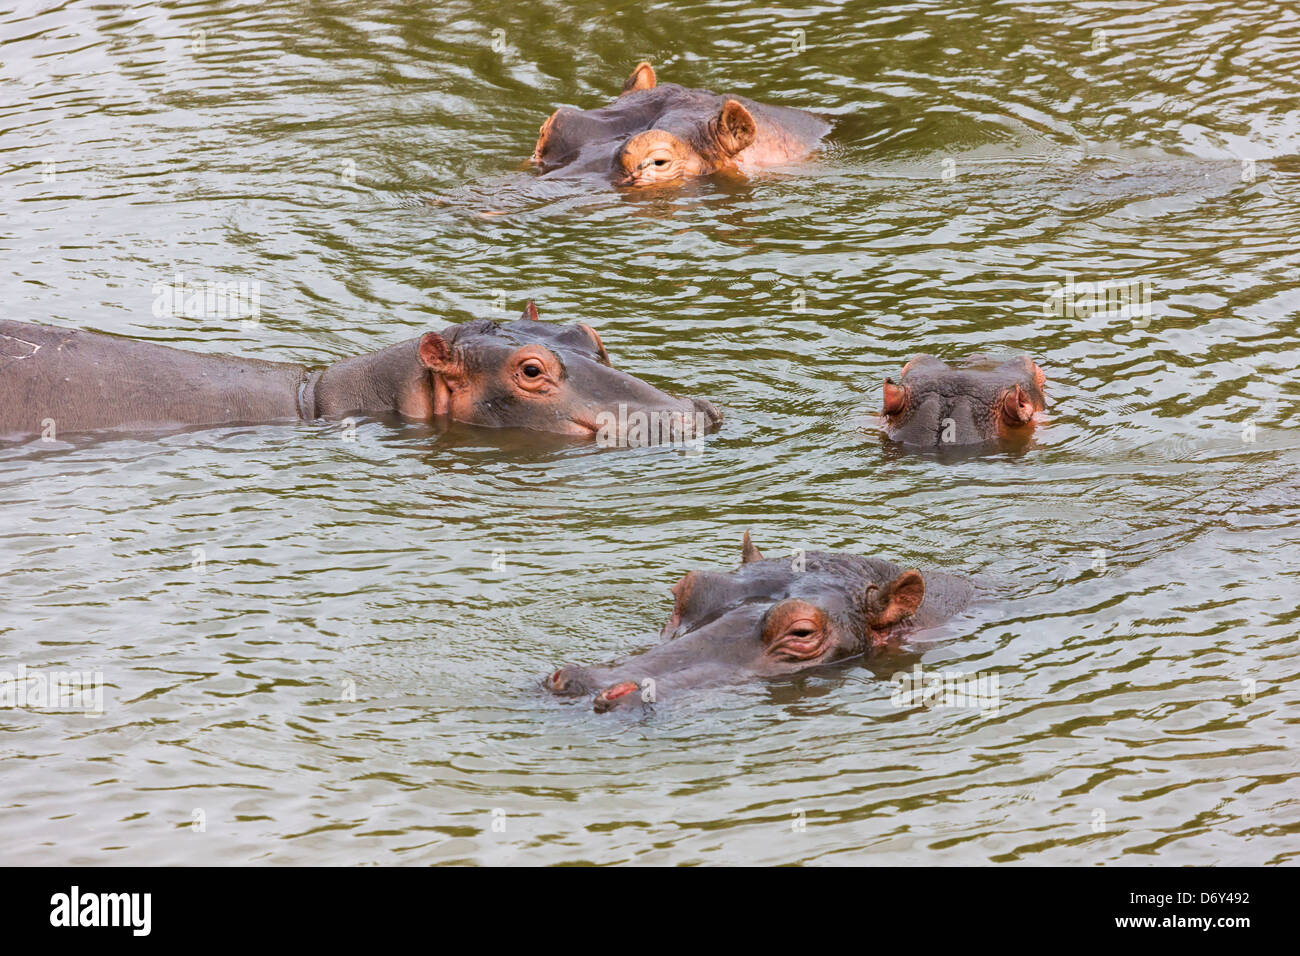 Des hippopotames dans l'eau, Masai Mara, Kenya Banque D'Images